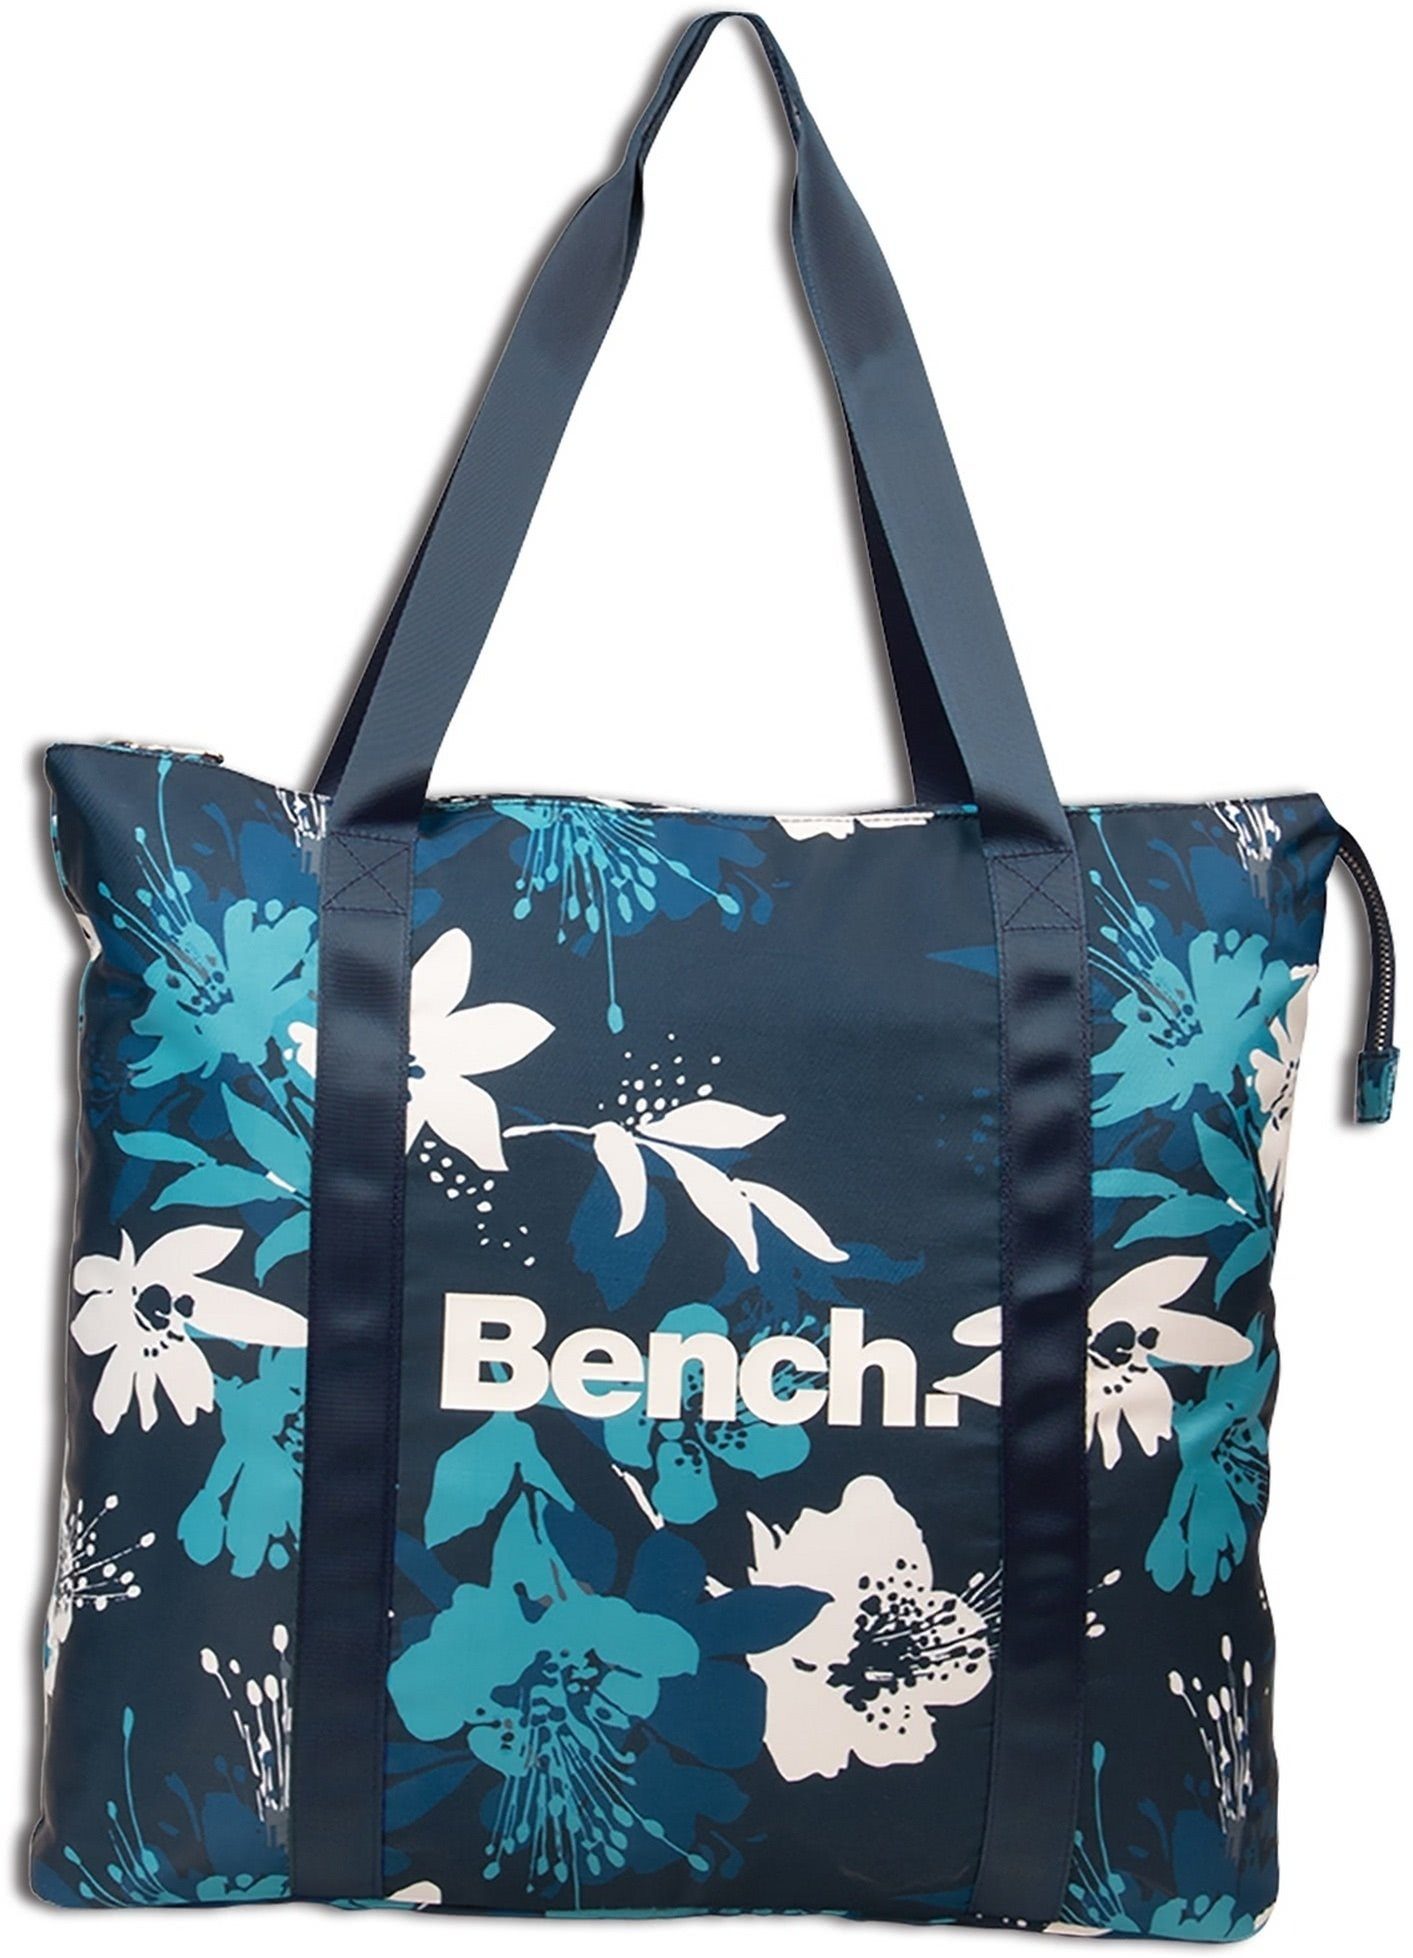 Bench. Schultertasche Bench sportliche Shopper Bag, Damen, Jugend Tasche  strapazierfähiges Textilnylon blau, hellblau weiß